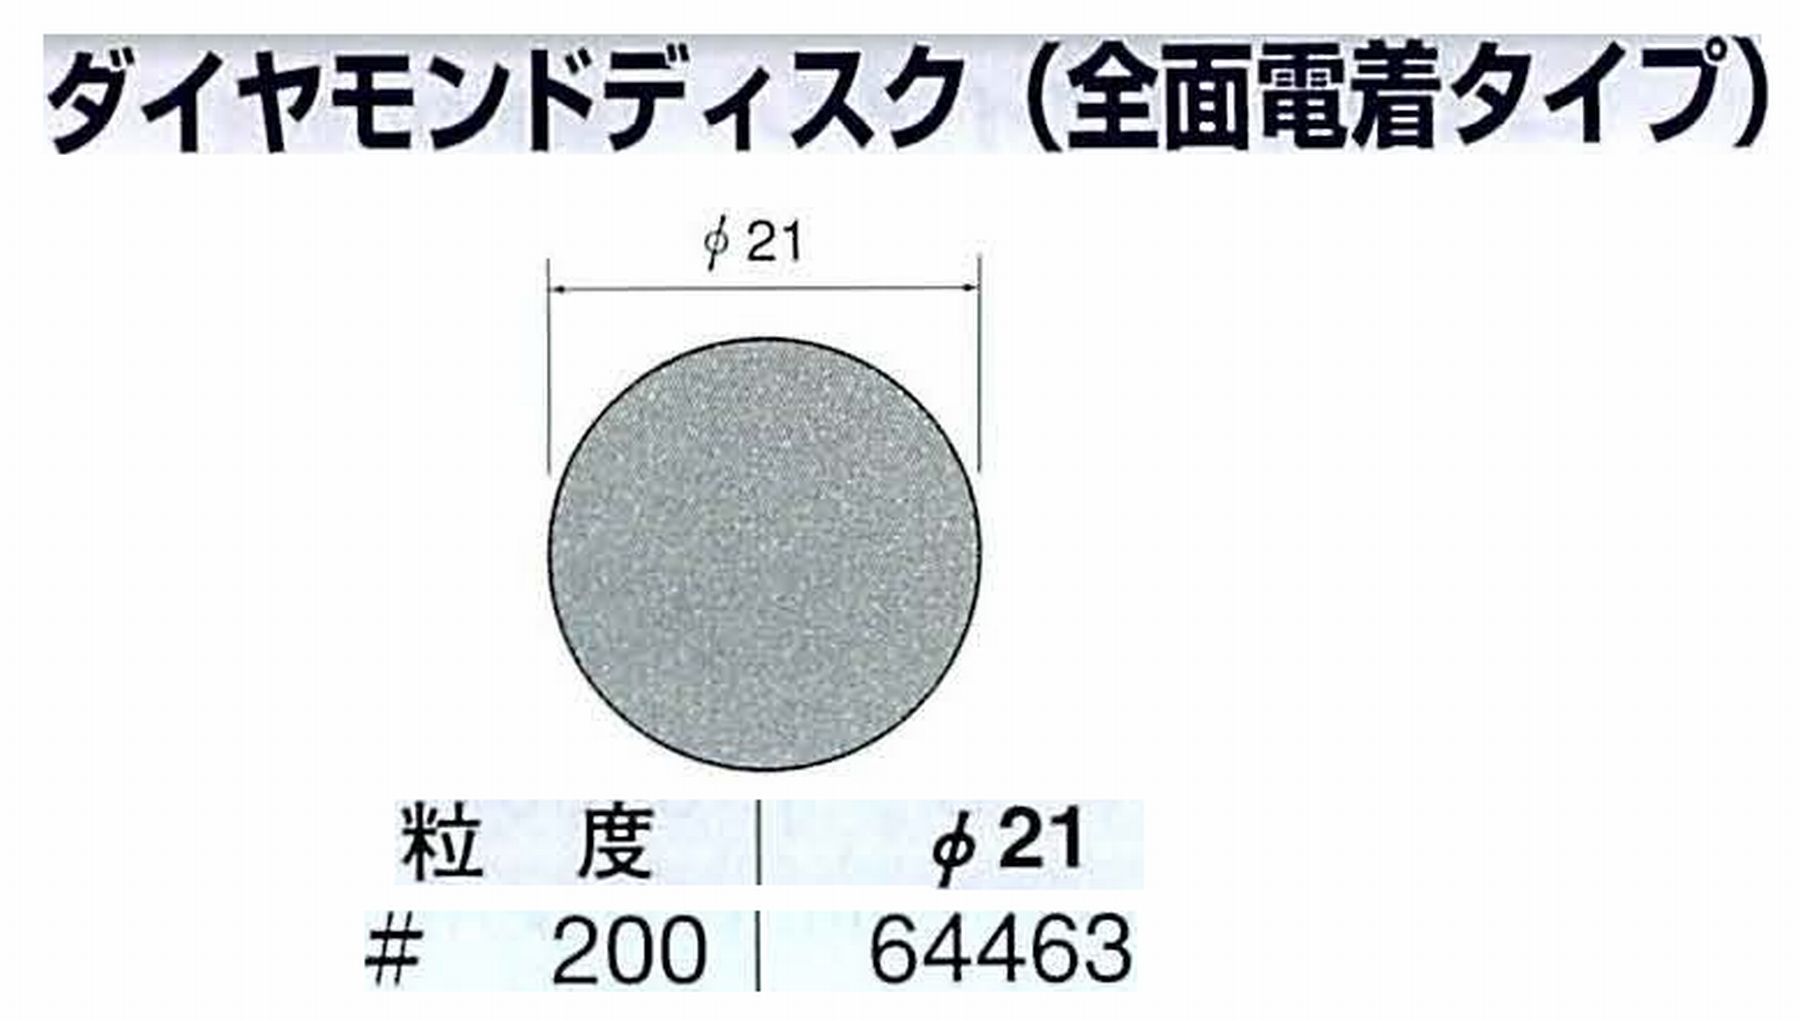 ナカニシ/NAKANISHI アングルグラインダ(電動・エアー) アングルアタッチメント専用工具 ダイヤモンドディスク(全面電着タイプ) 64463